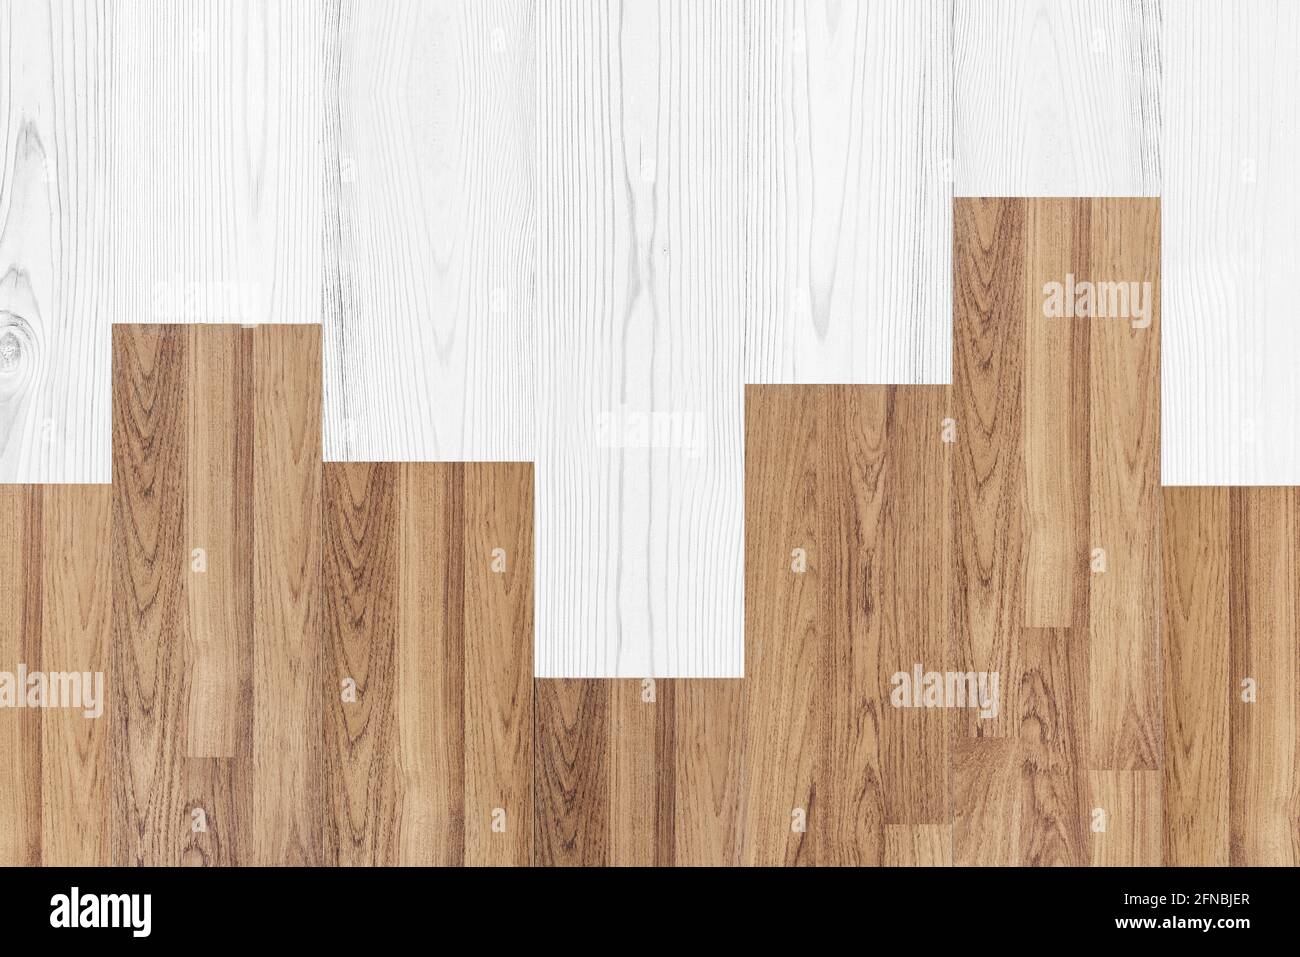 Wooden floor texture. Wood texture backgrounds Stock Photo